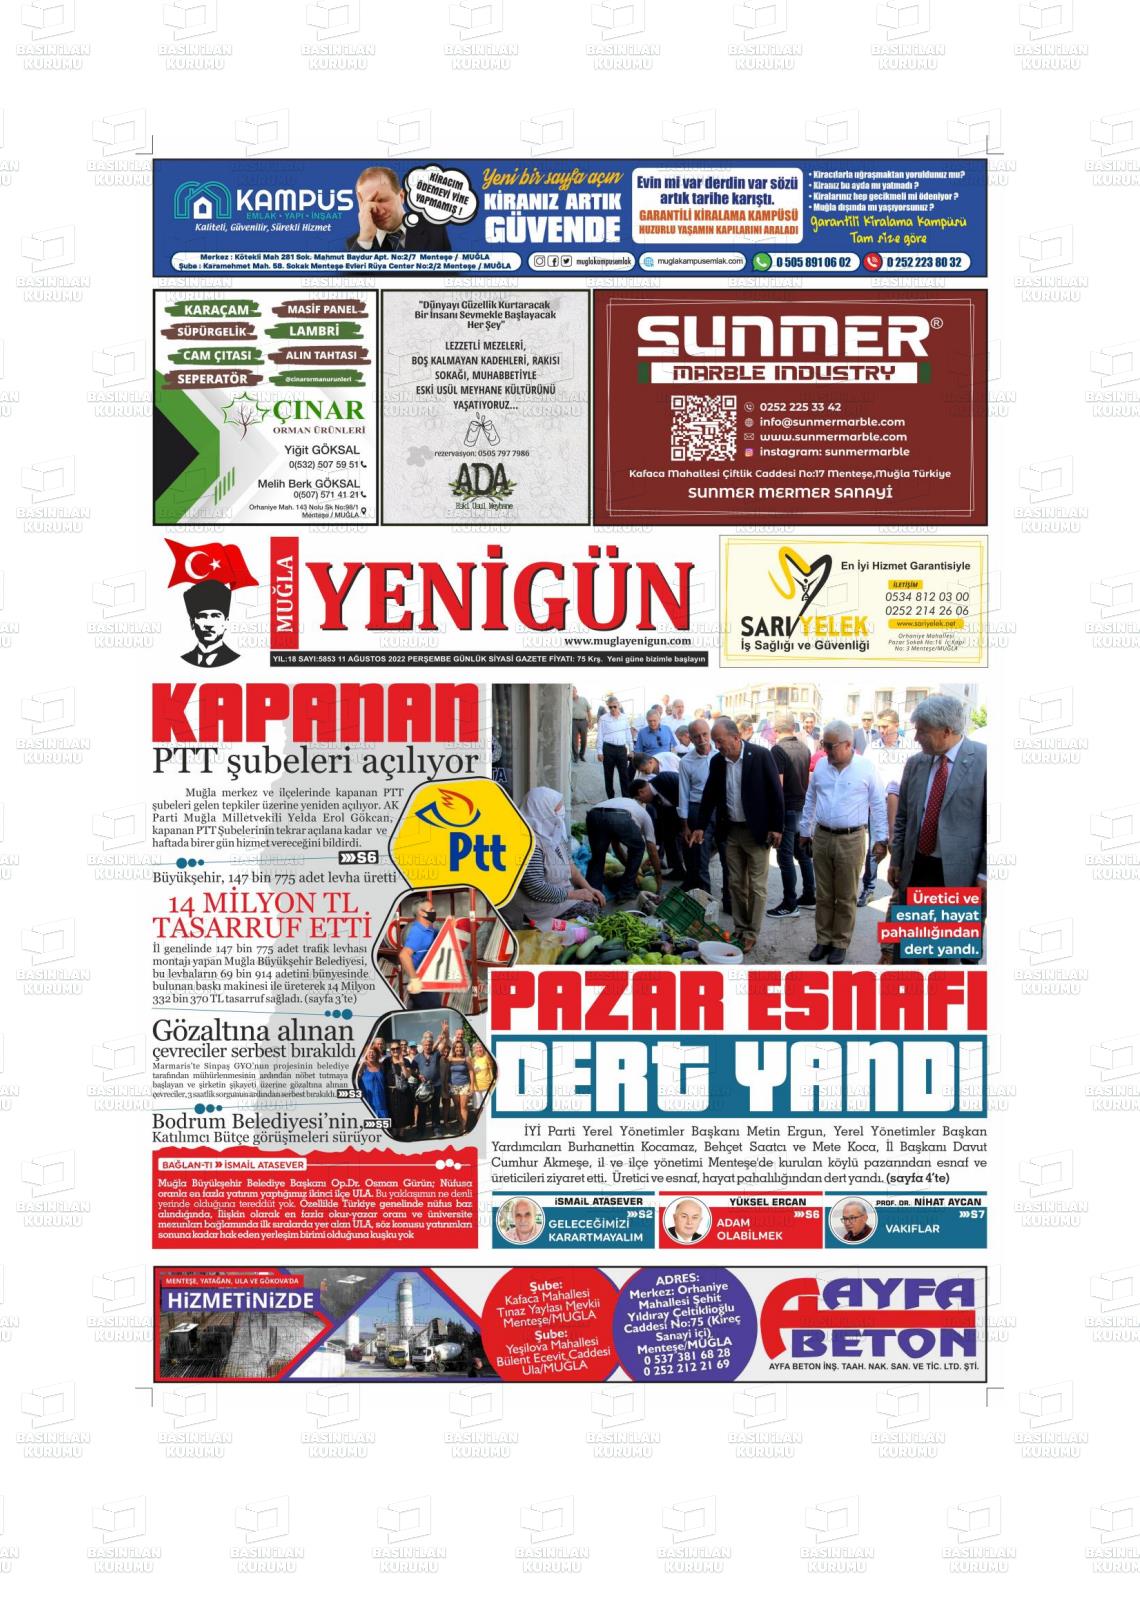 11 Ağustos 2022 Muğla Yenigün Gazete Manşeti